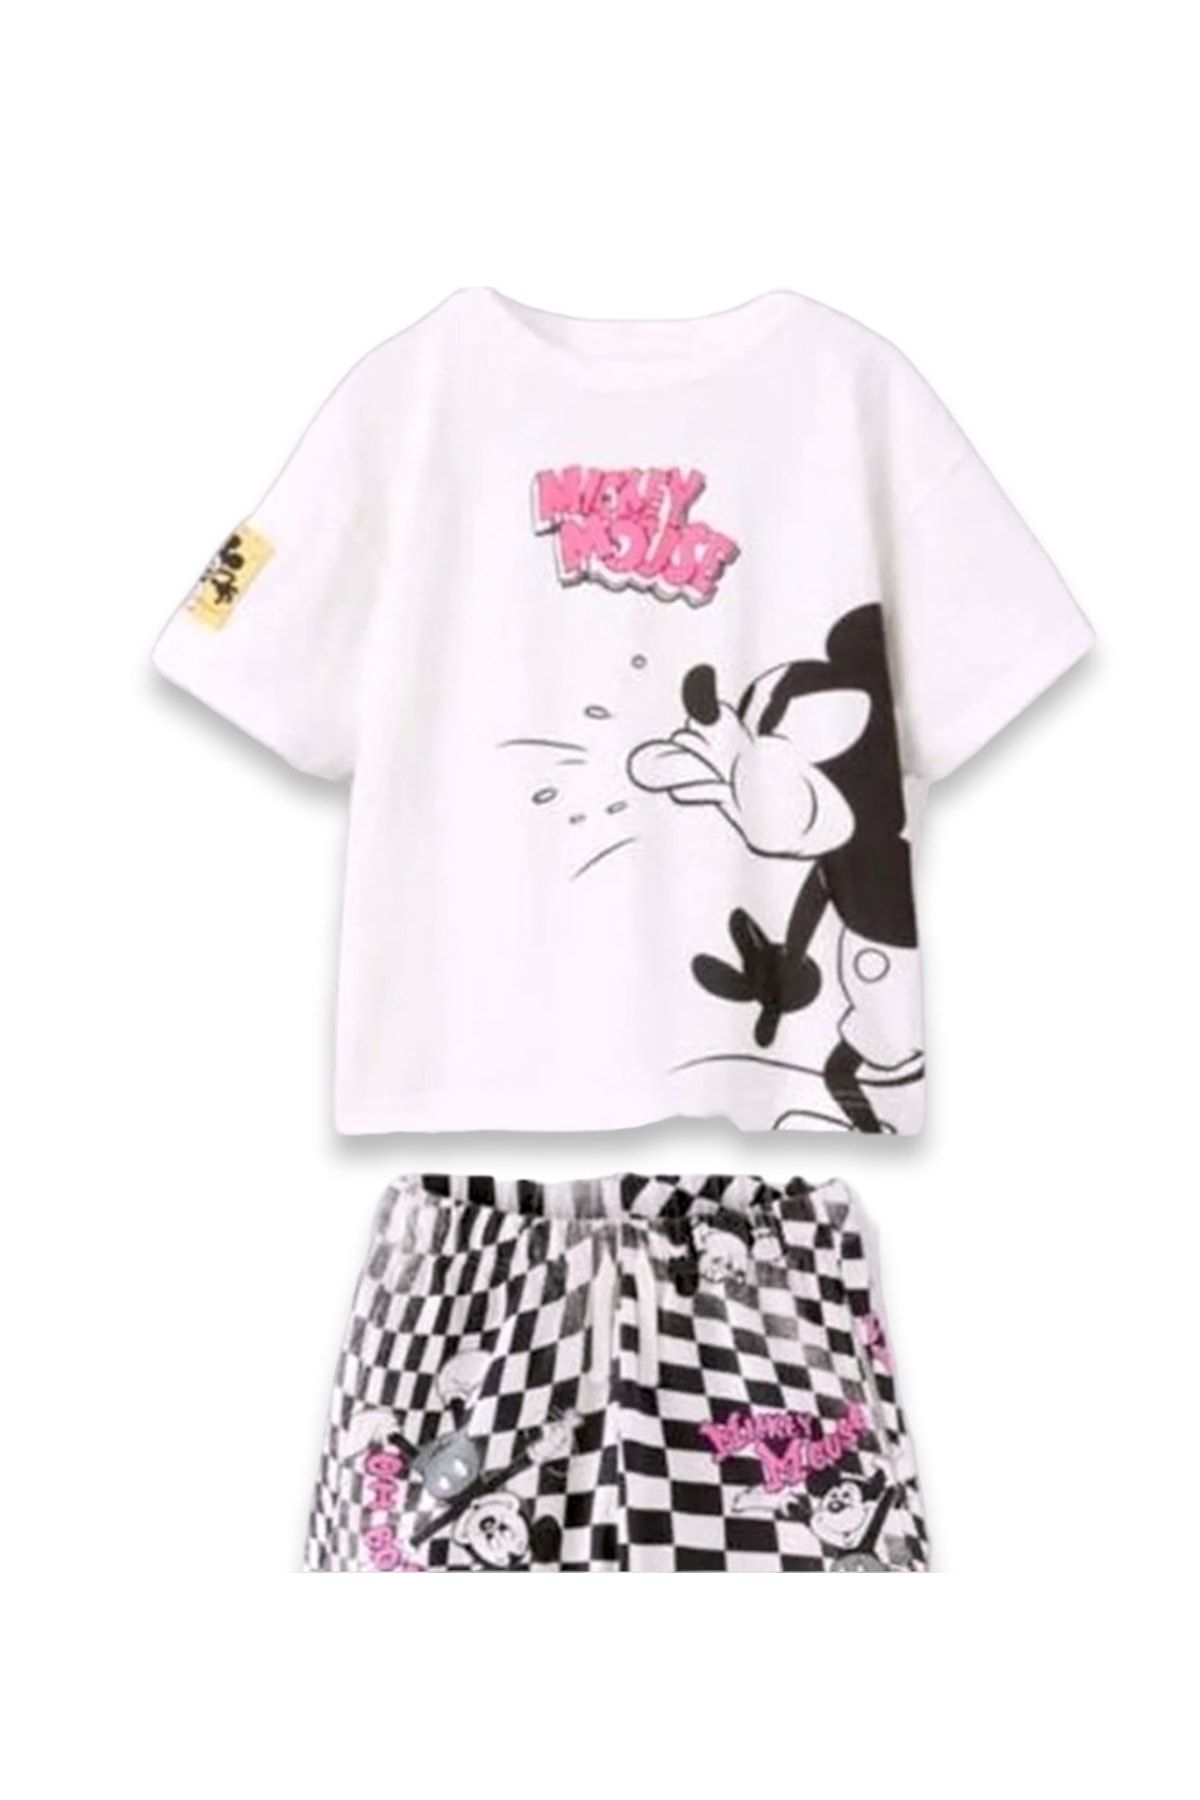 Lolliboomkids Kız Erkek Çocuk Siyah Beyaz Pembe Damalı Mickey Mouse T-shirt Şort Takım